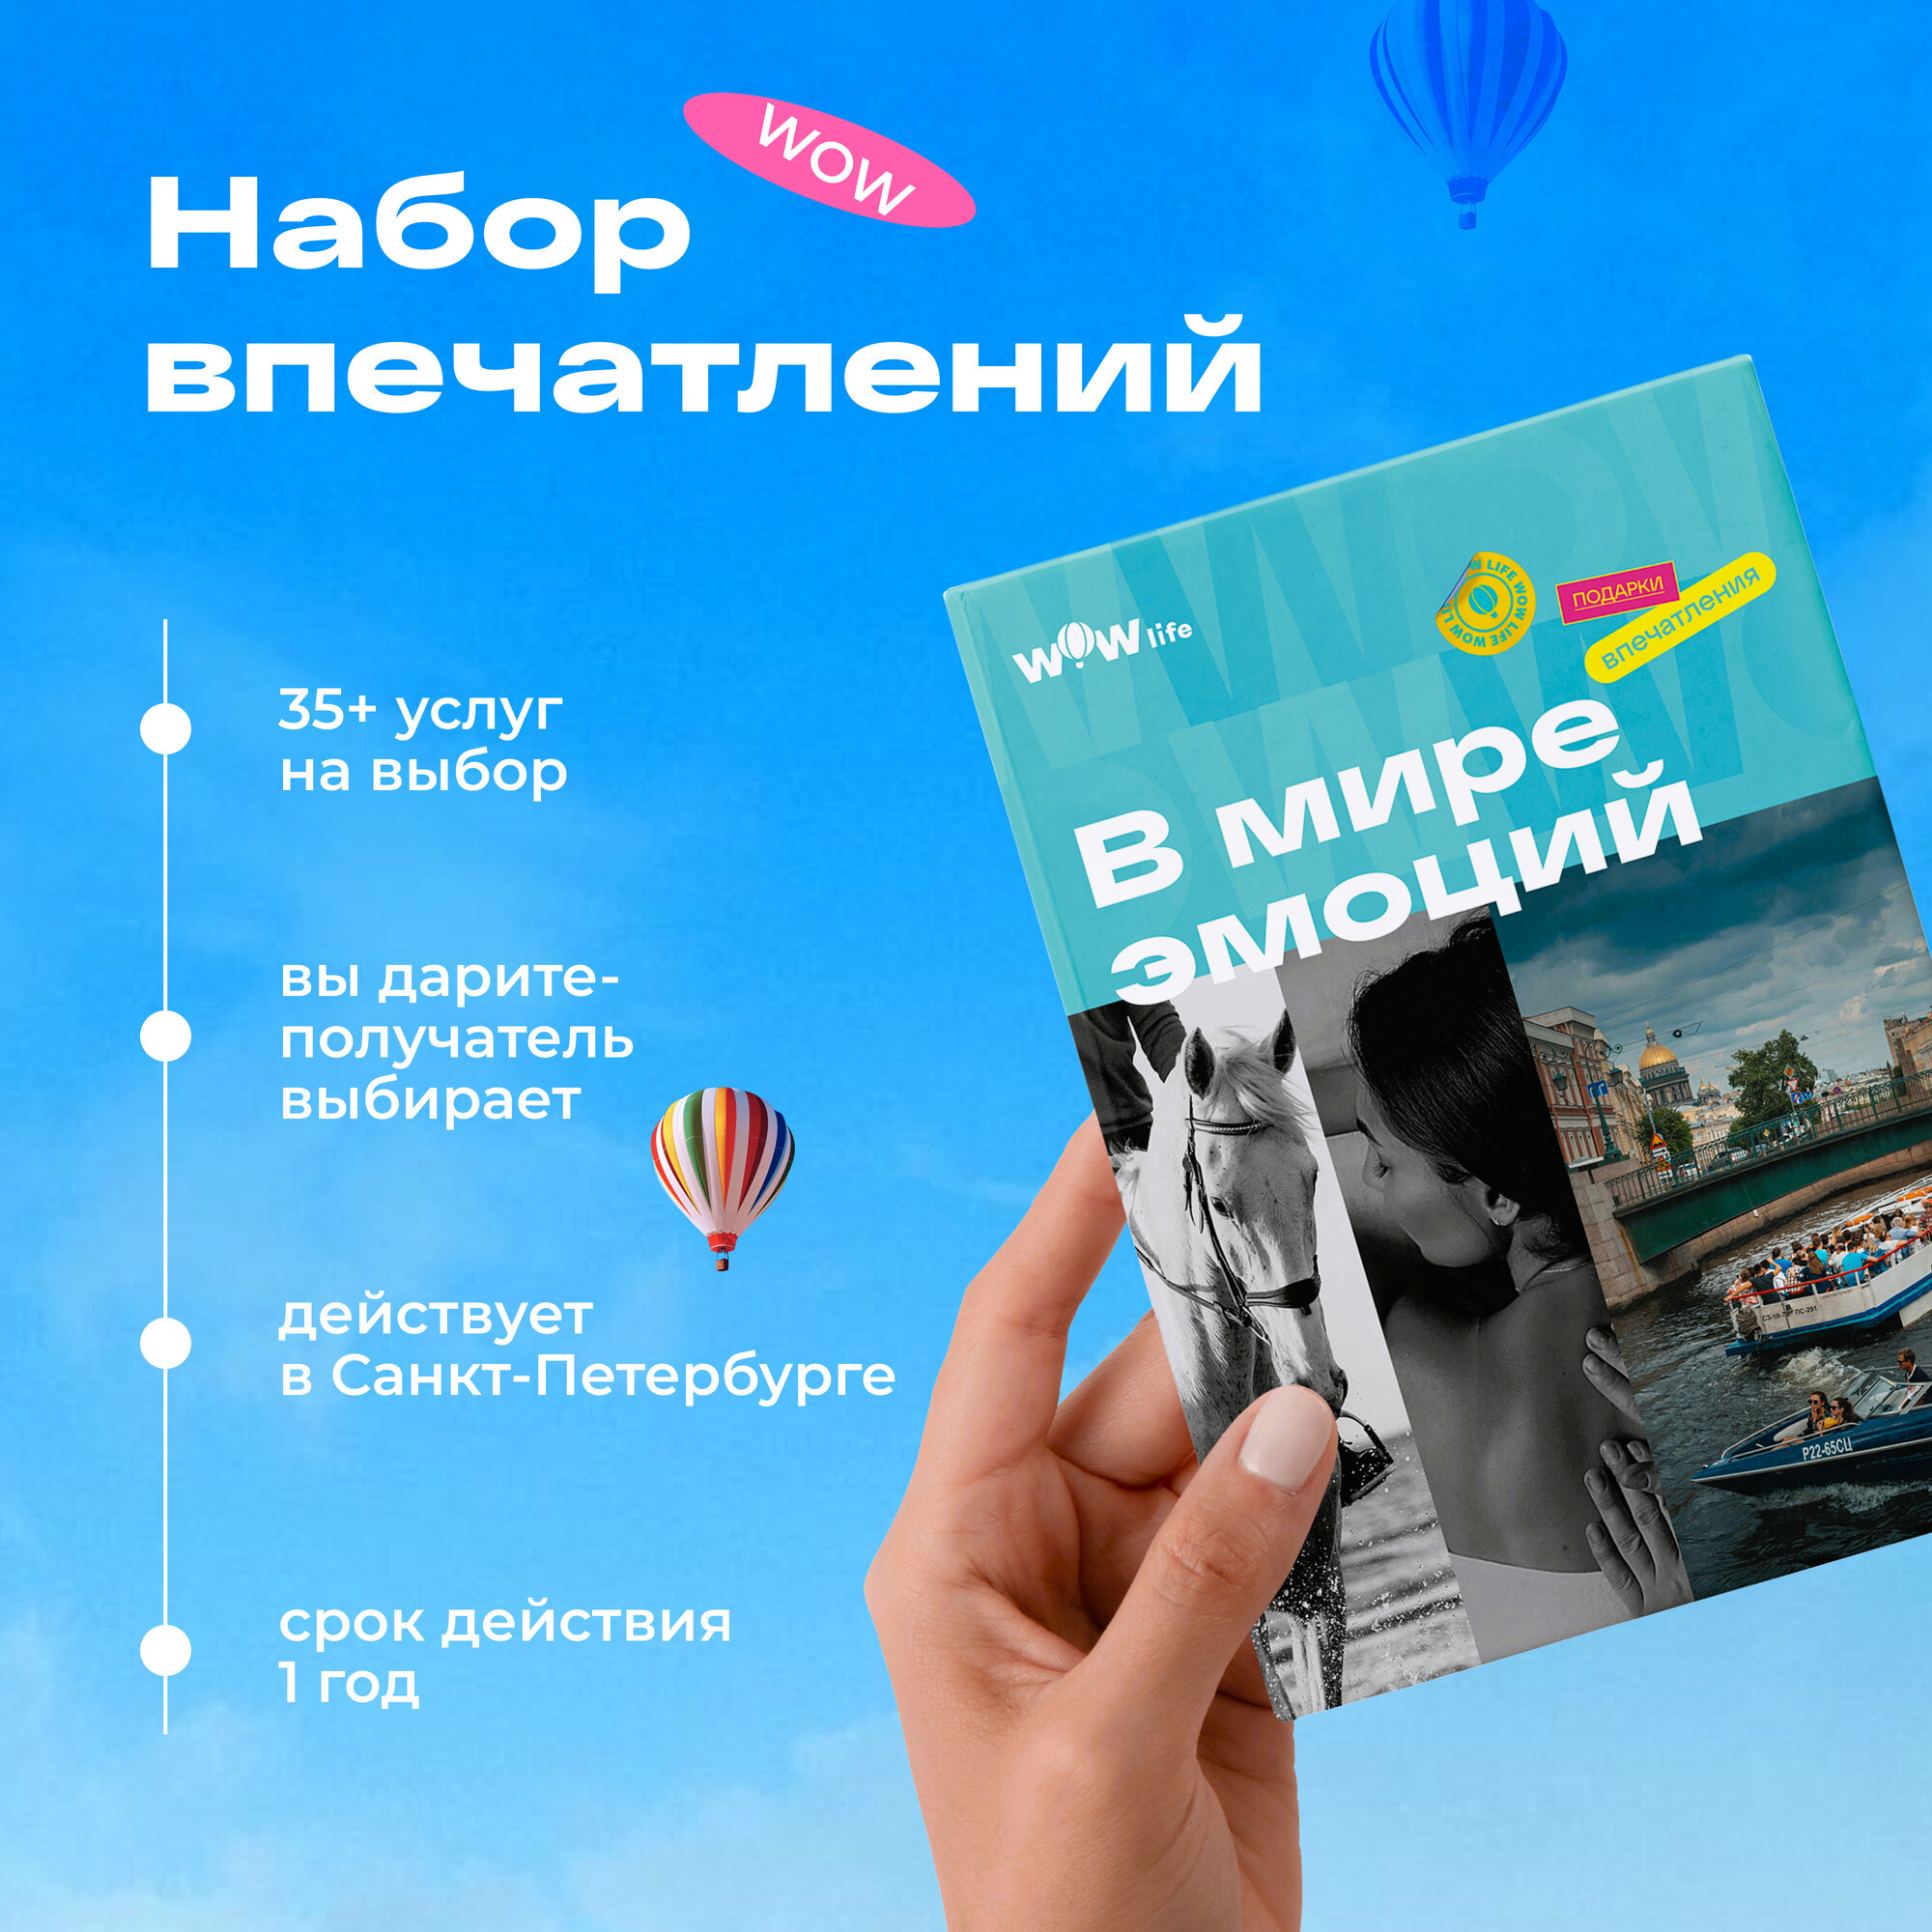 Подарочный сертификат WOWlife "В мире эмоций" - набор из впечатлений на выбор, Санкт-Петербург